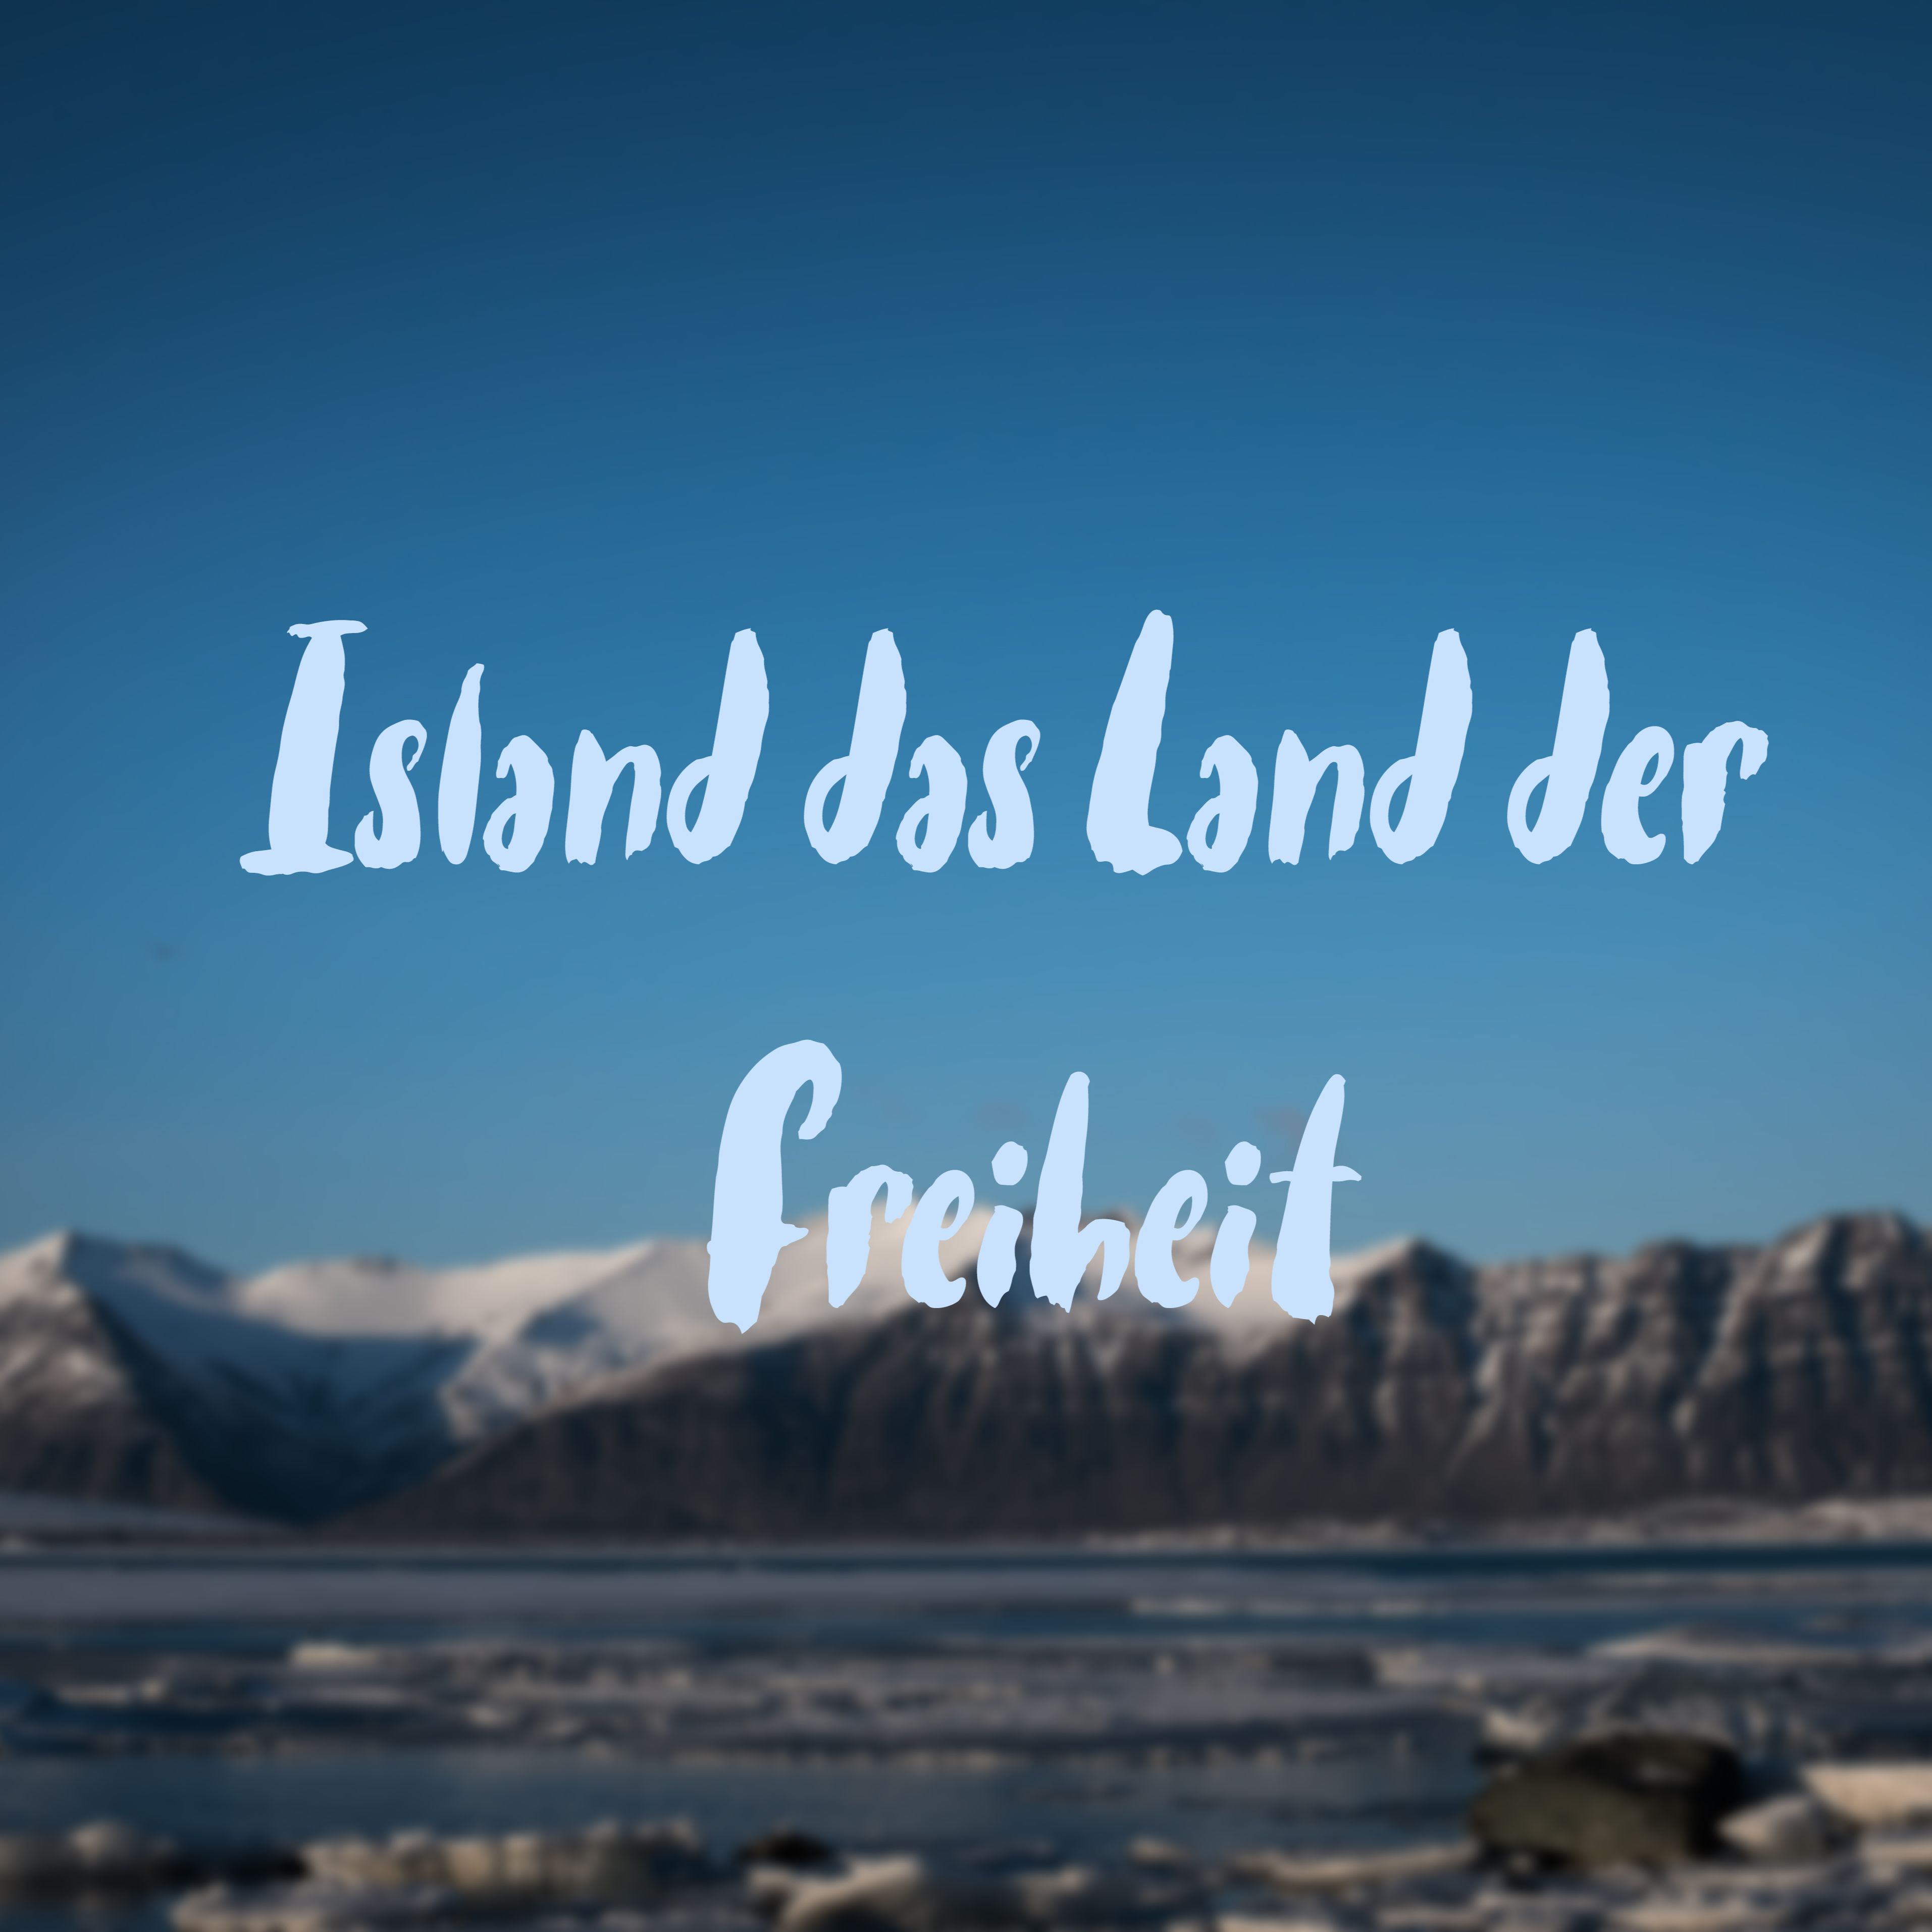 Island das Land der Freiheit #Reiseblog Teil 1